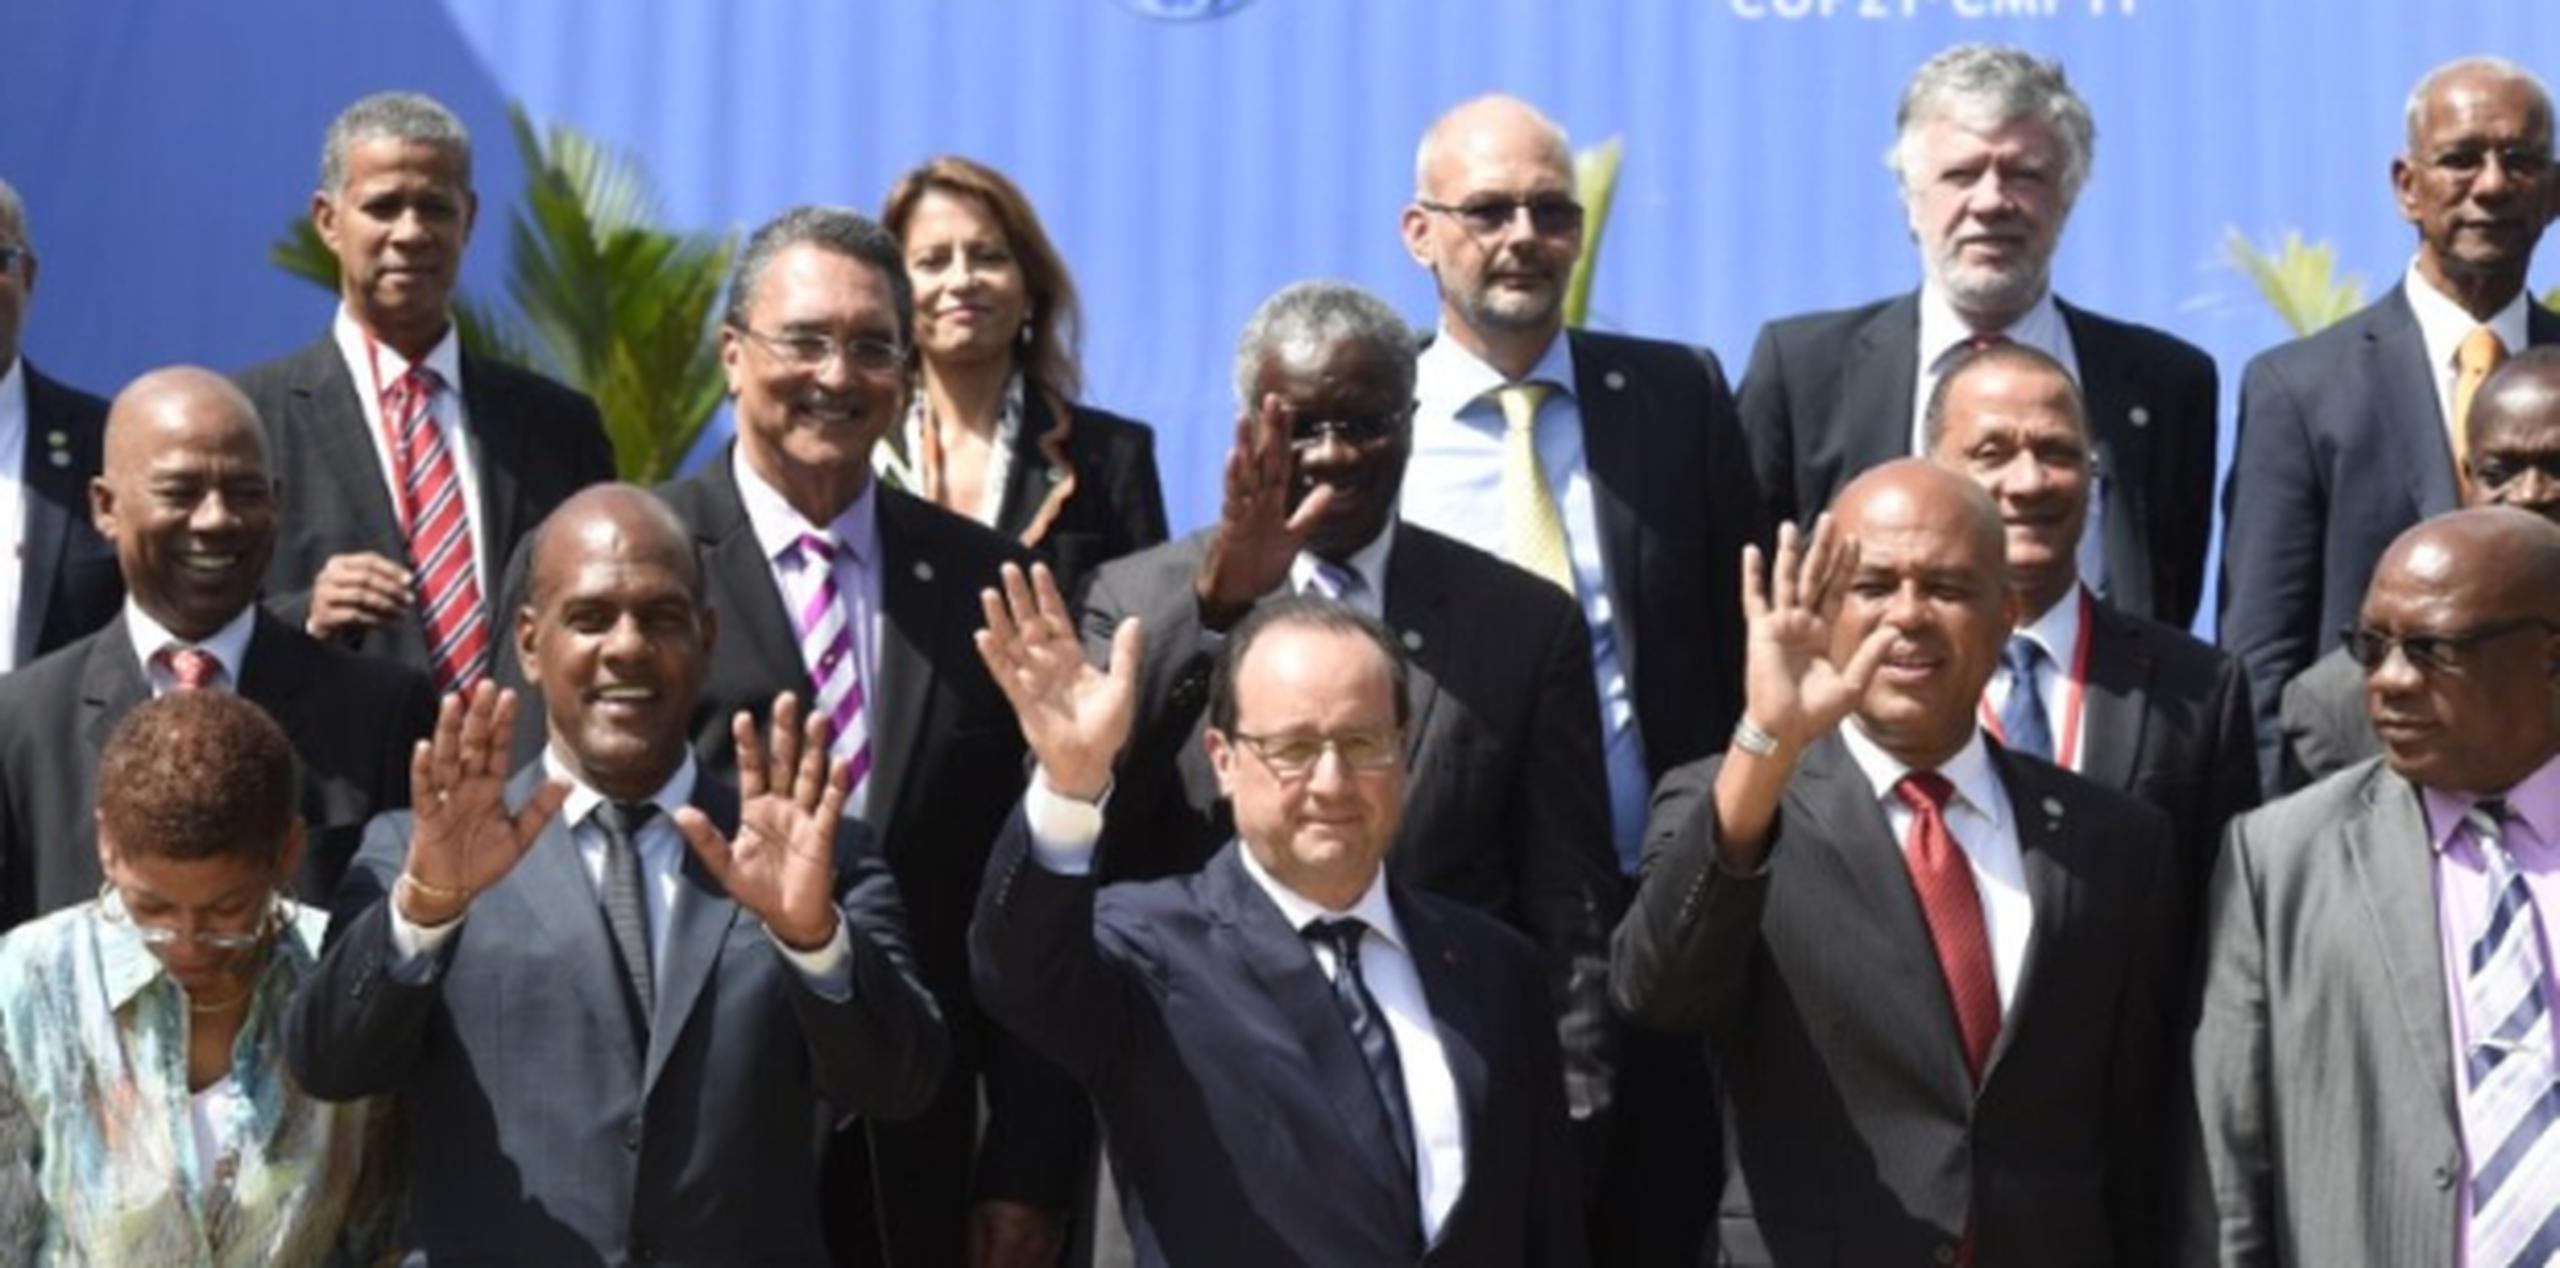 La Cumbre Climática del Caribe congregó a unos 40 gobernantes y altos funcionarios de países de la región como Cuba, Bahamas y Trinidad y Tobago. (AFP)